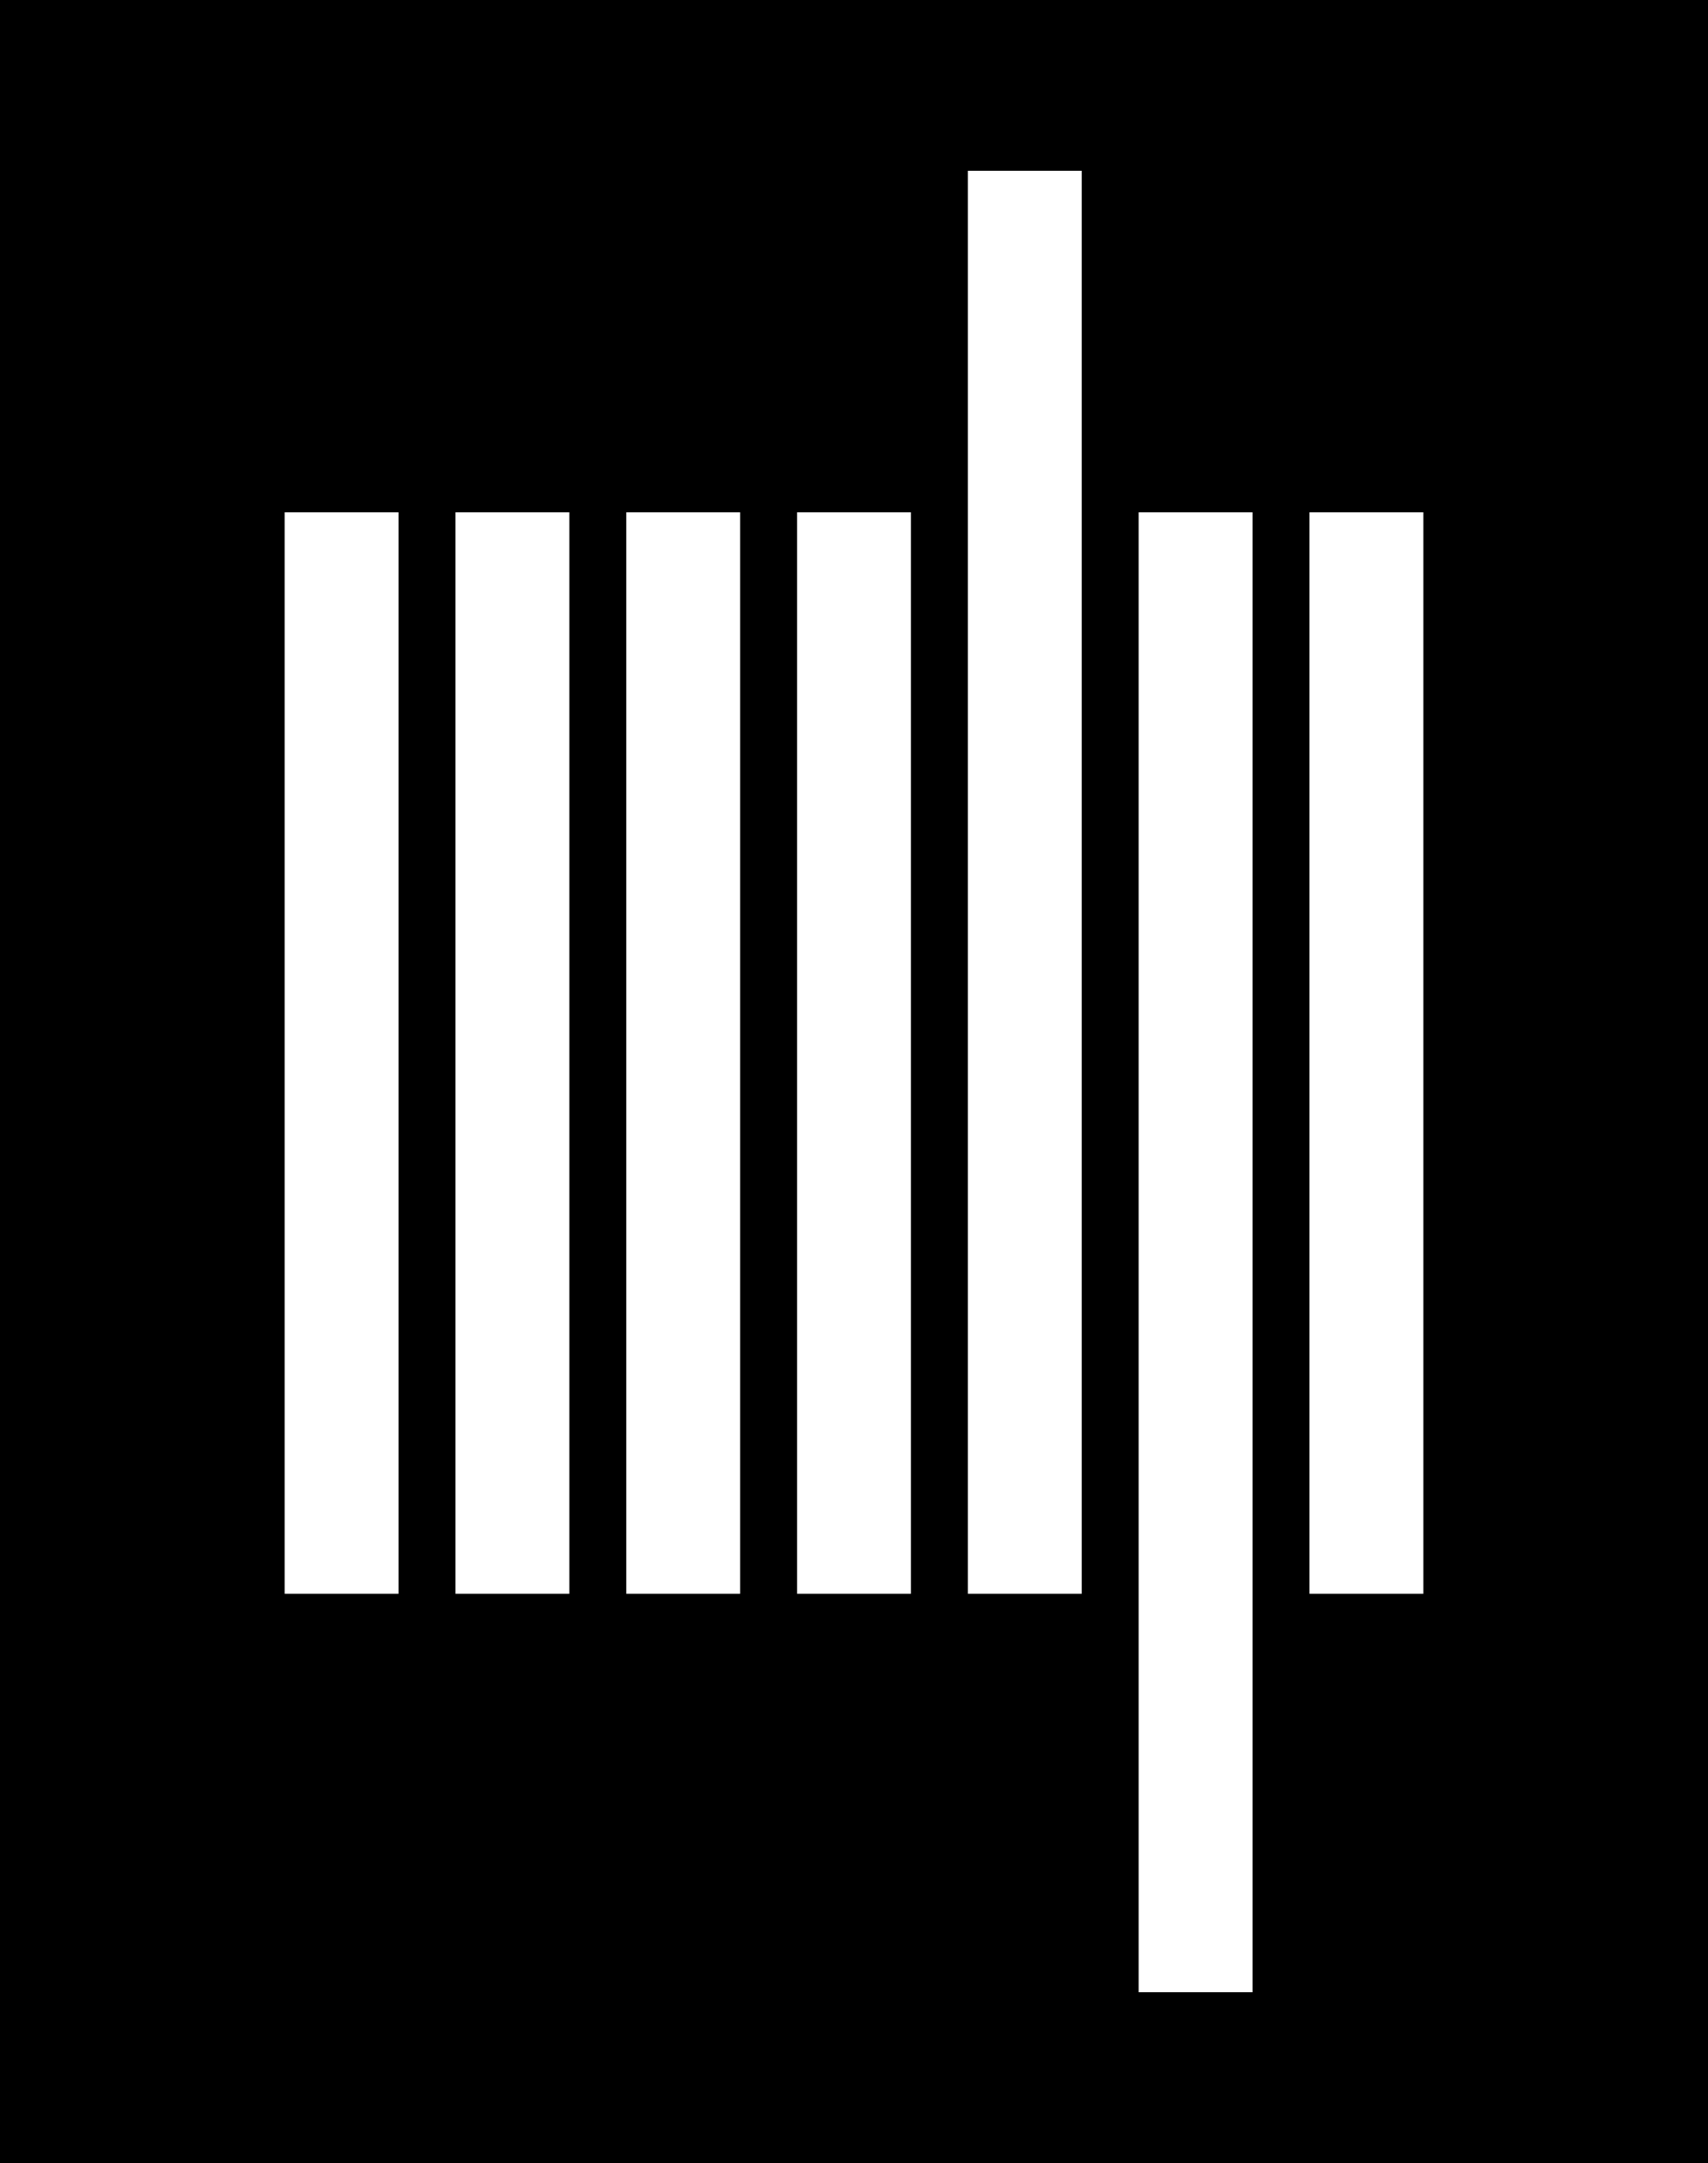 MIT Logo - Logo Mit PNG Transparent Logo Mit.PNG Images. | PlusPNG